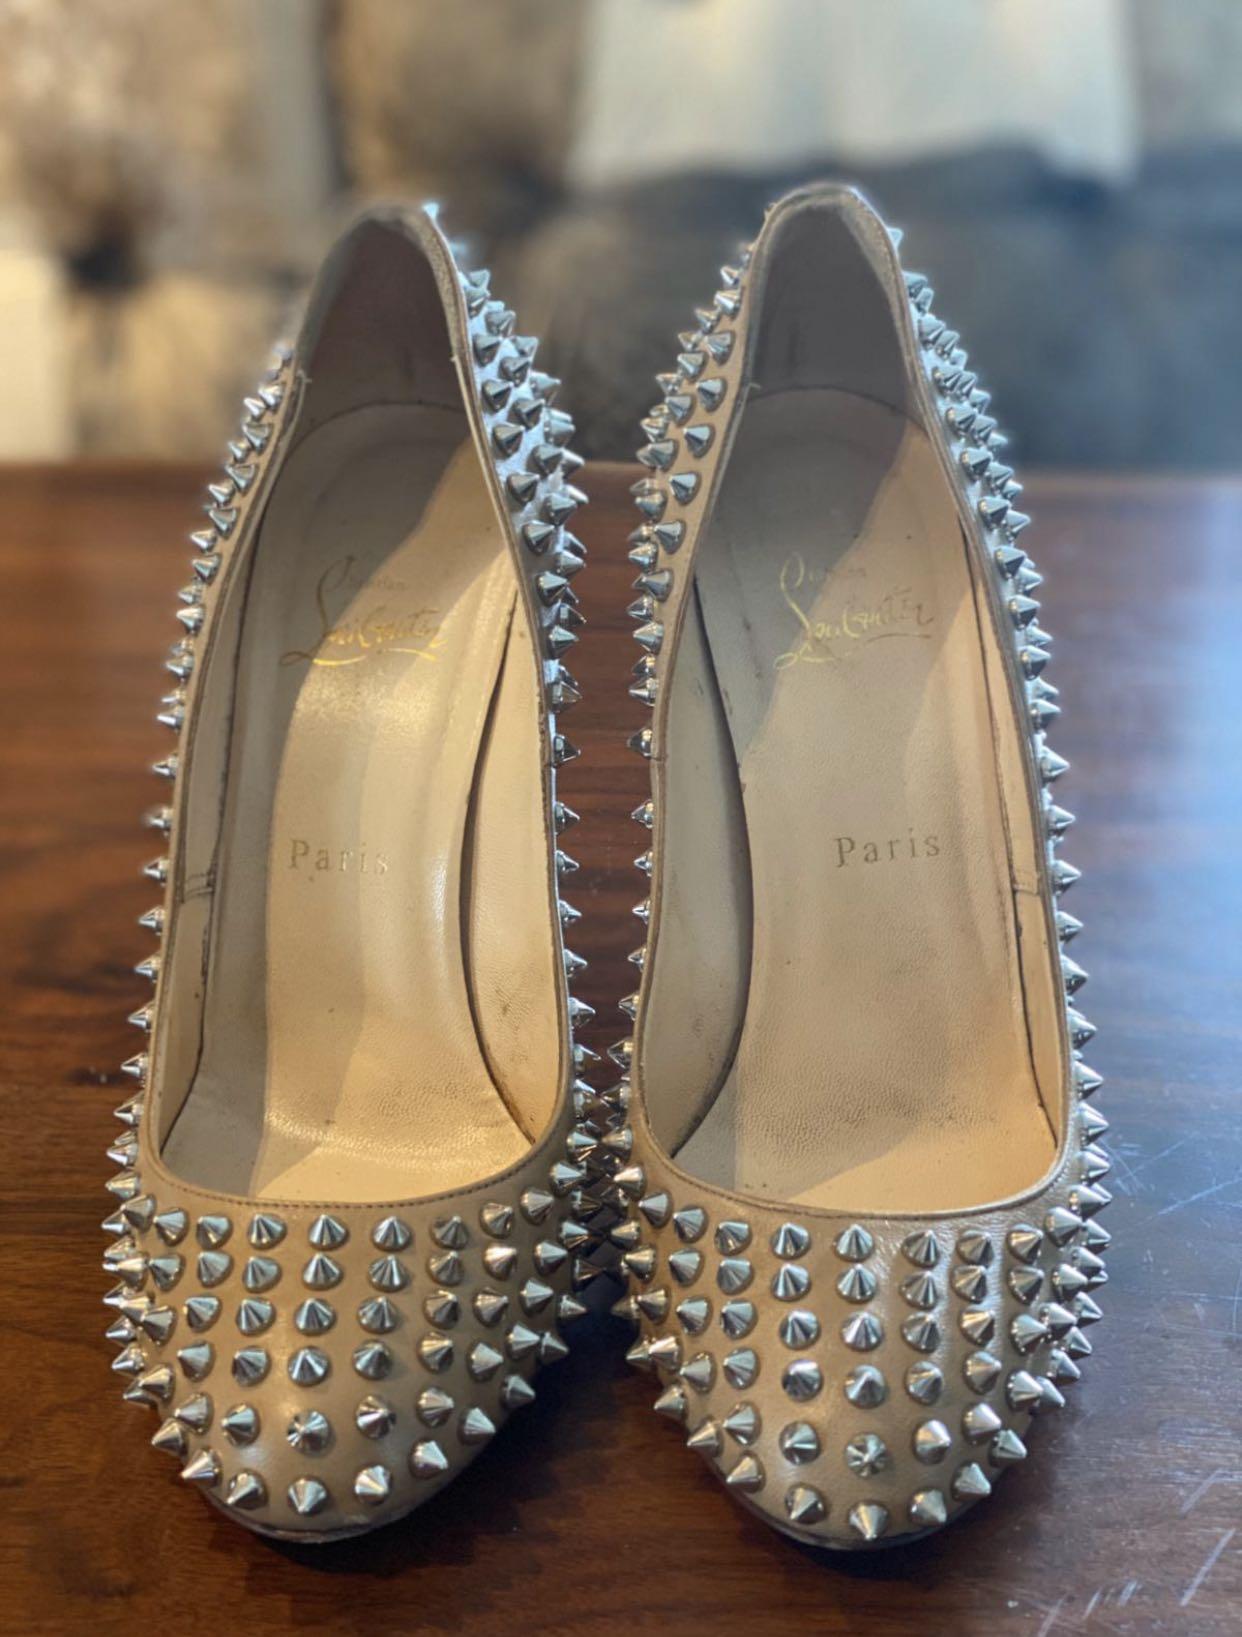 louboutin silver heels